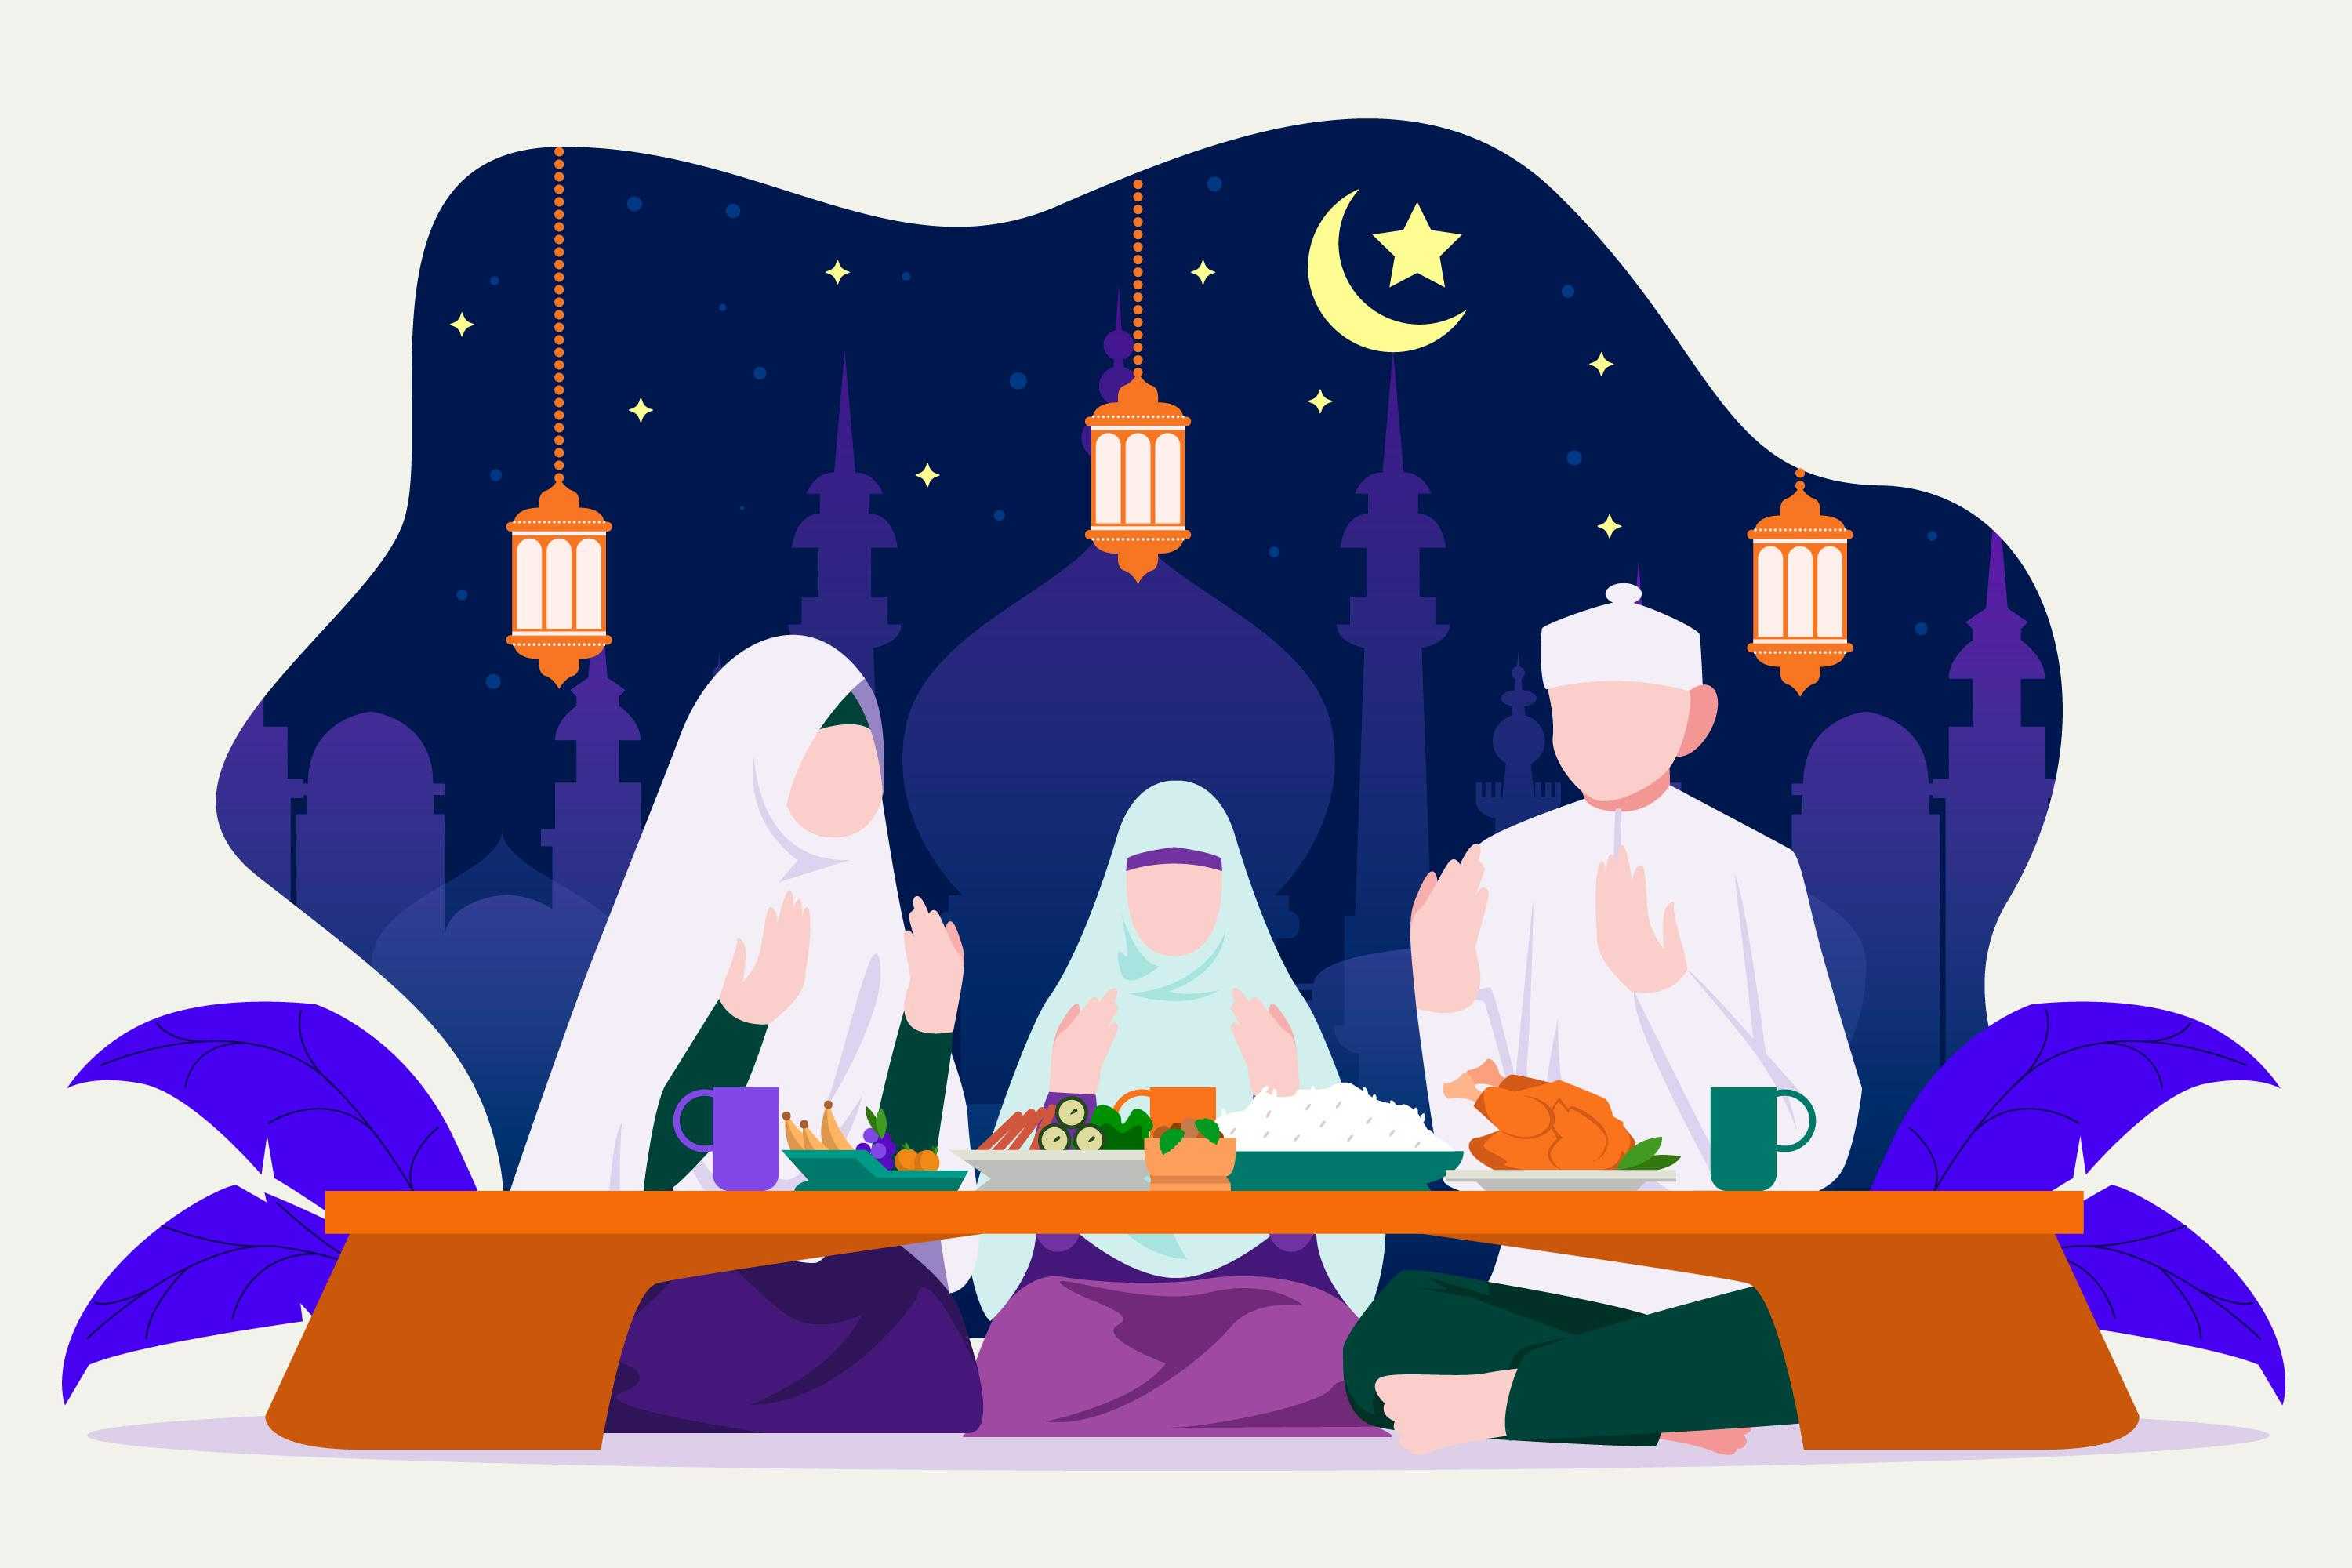 Lupa Niat Puasa di Malam Ramadhan, Apakah Puasanya Sah?